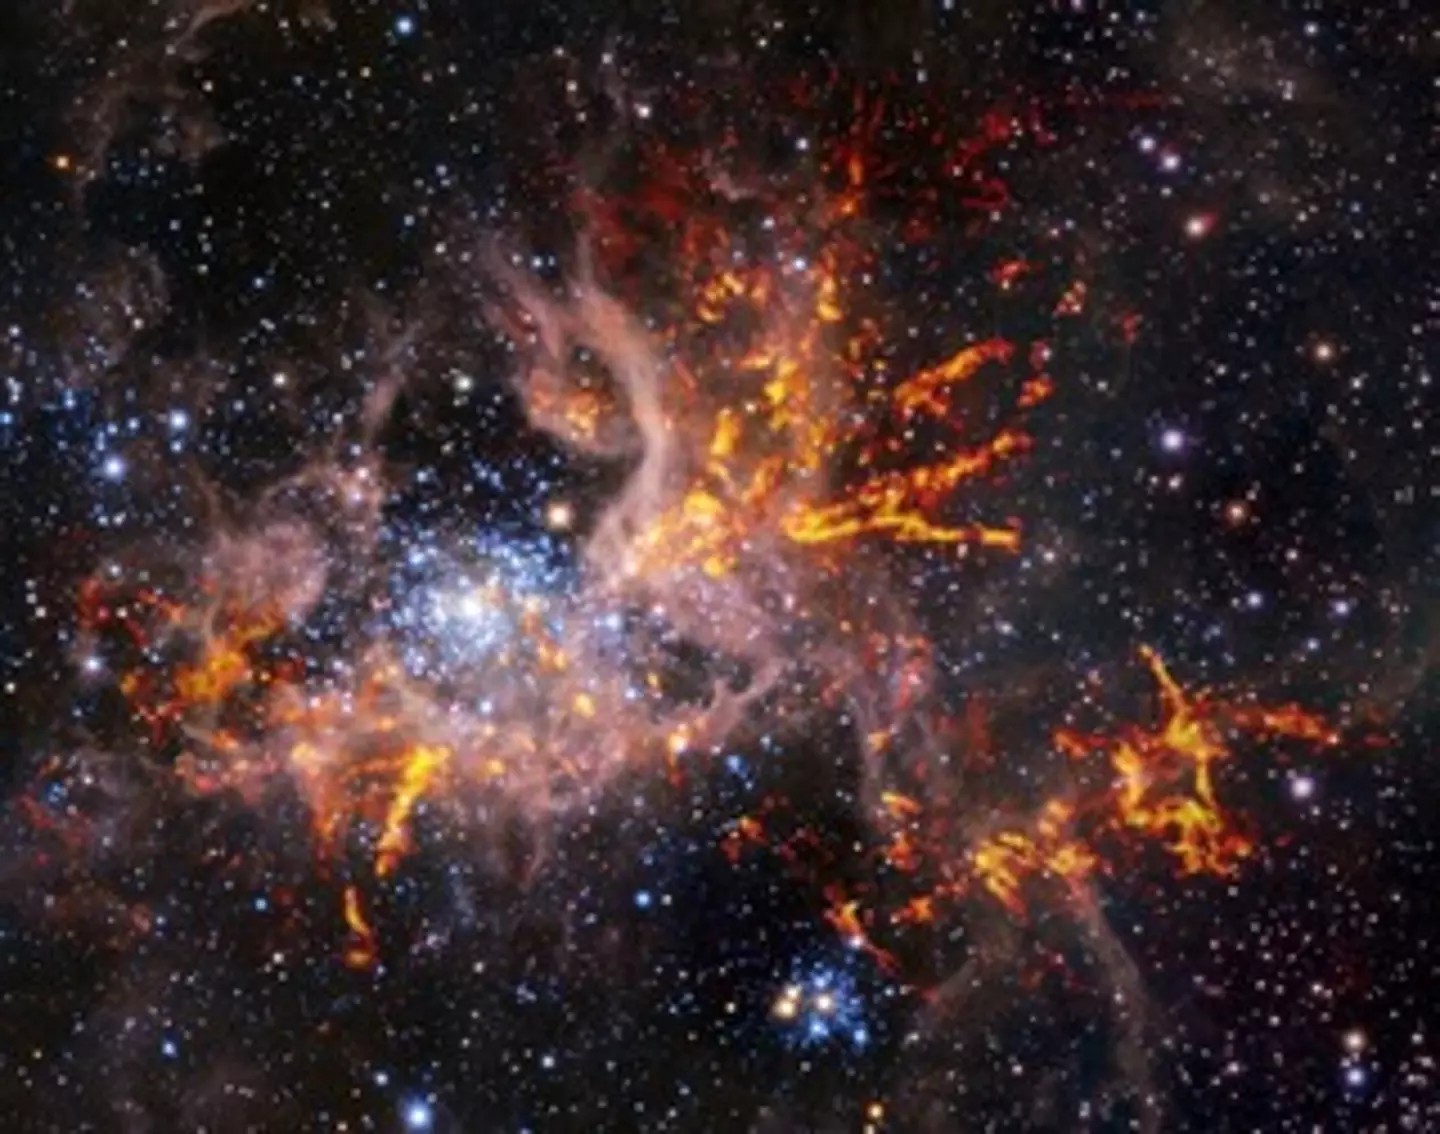 A previous image of the Tarantula Nebula.